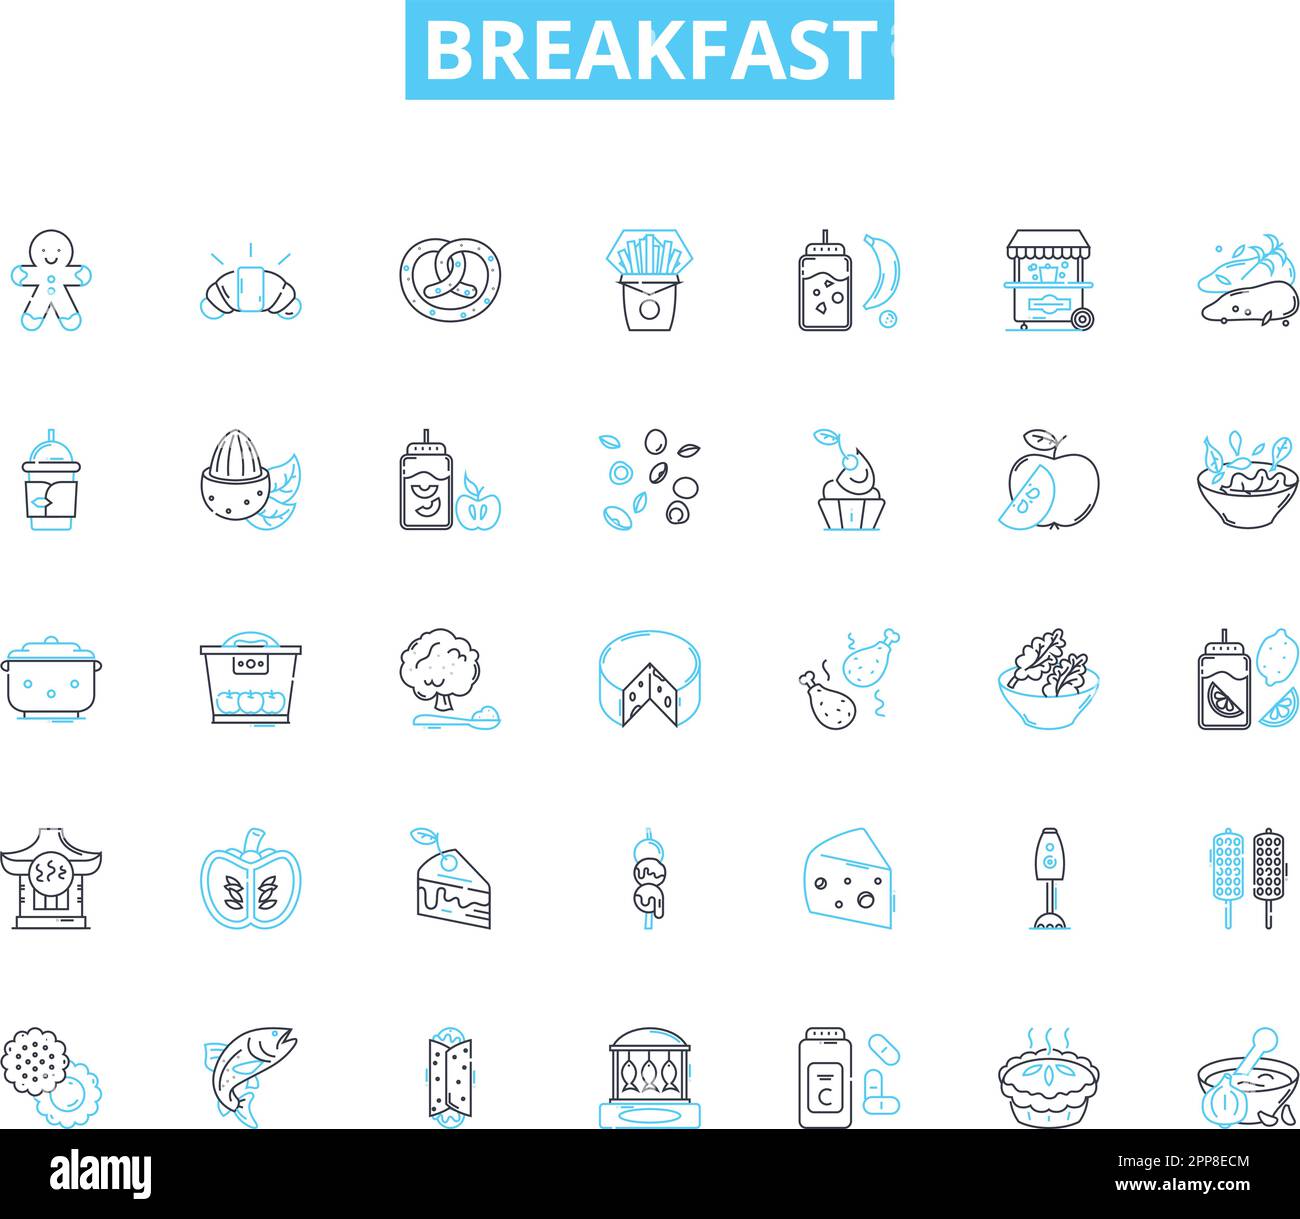 Frühstück mit linearen Symbolen. Pfannkuchen, Waffeln, Omelette, Müsli Und Cornflakes, Toast, Bagel-, Croissant-Linienvektor- und Konzeptschilder. Englischer Muffin, Speck, Wurst Stock Vektor